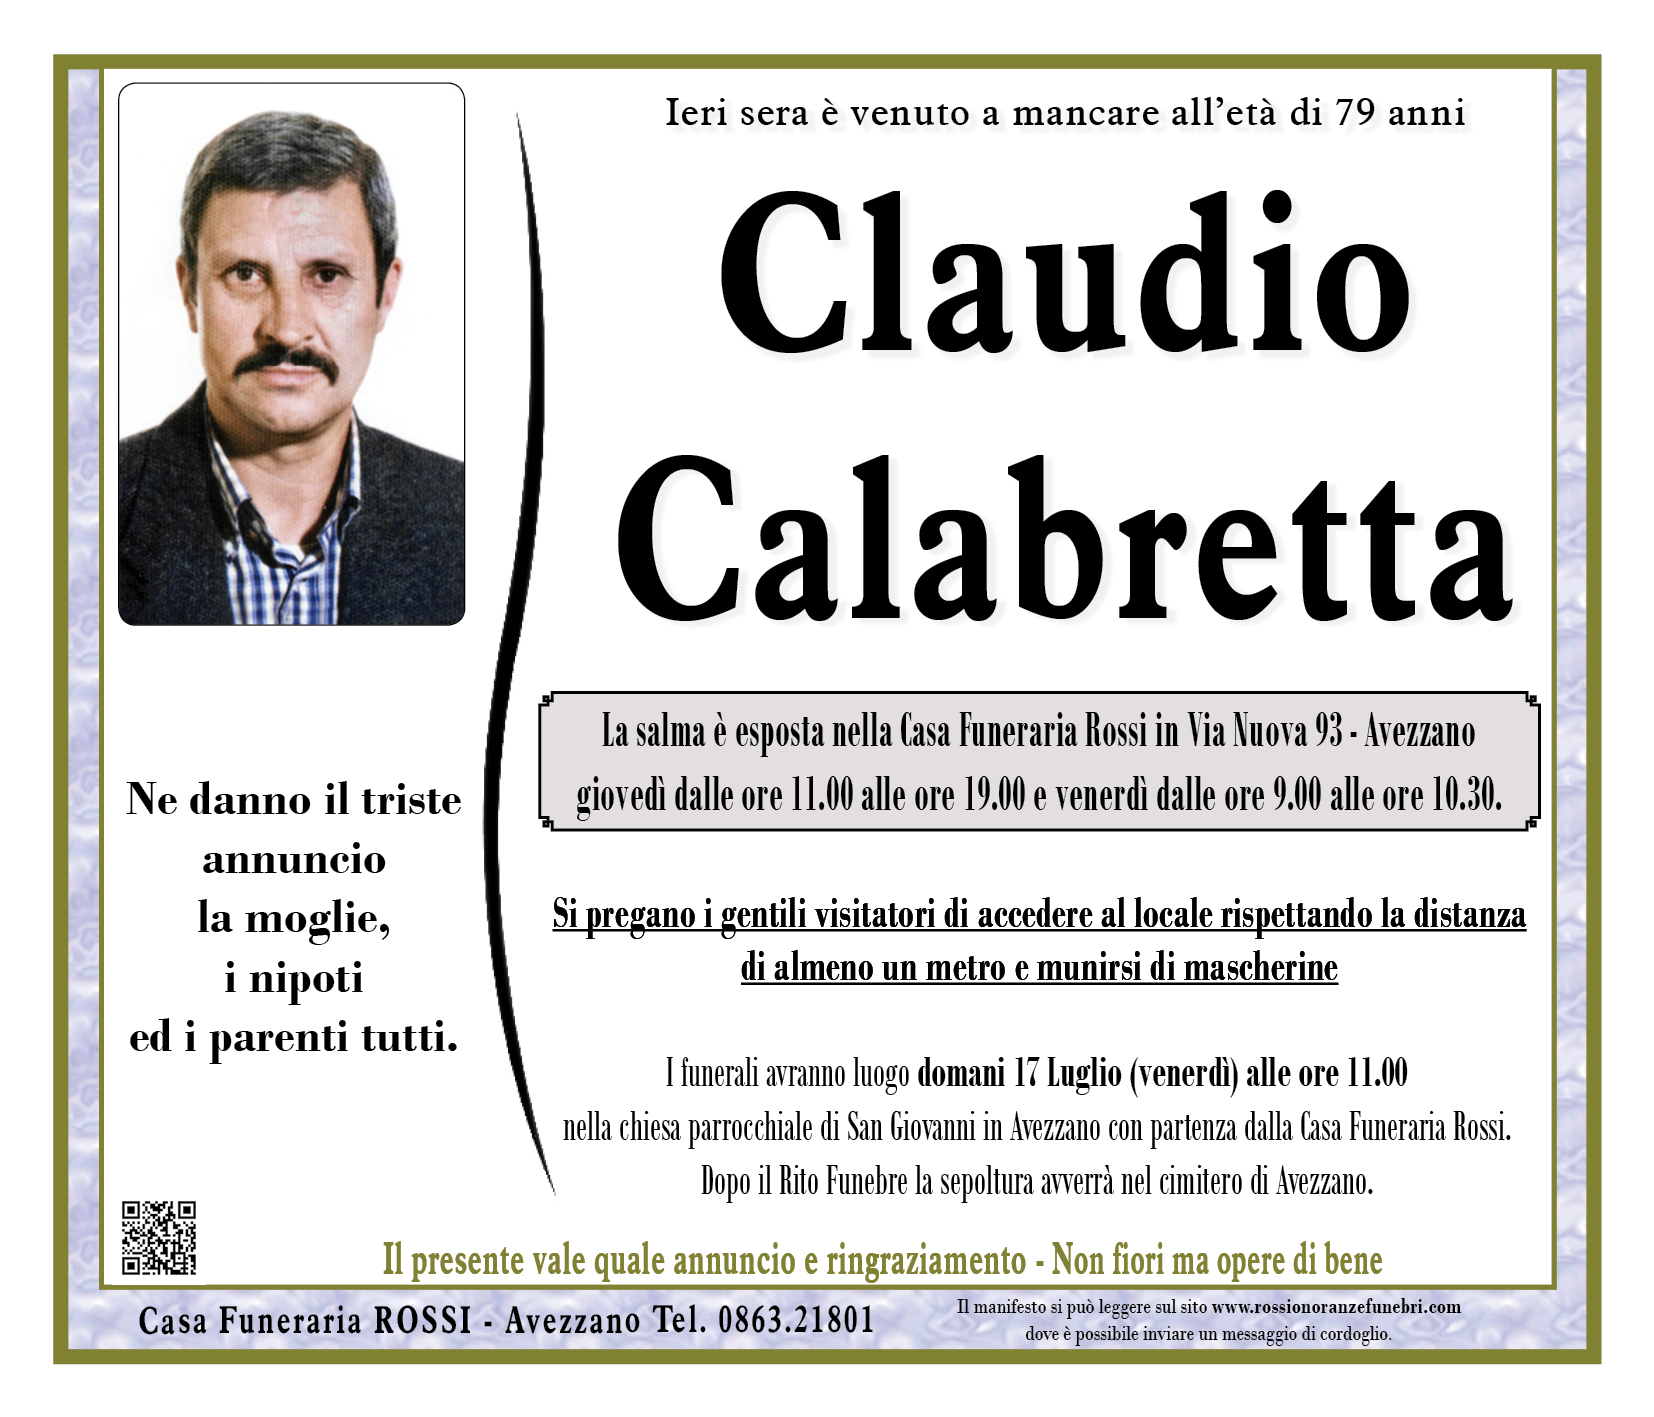 Claudio Calabretta